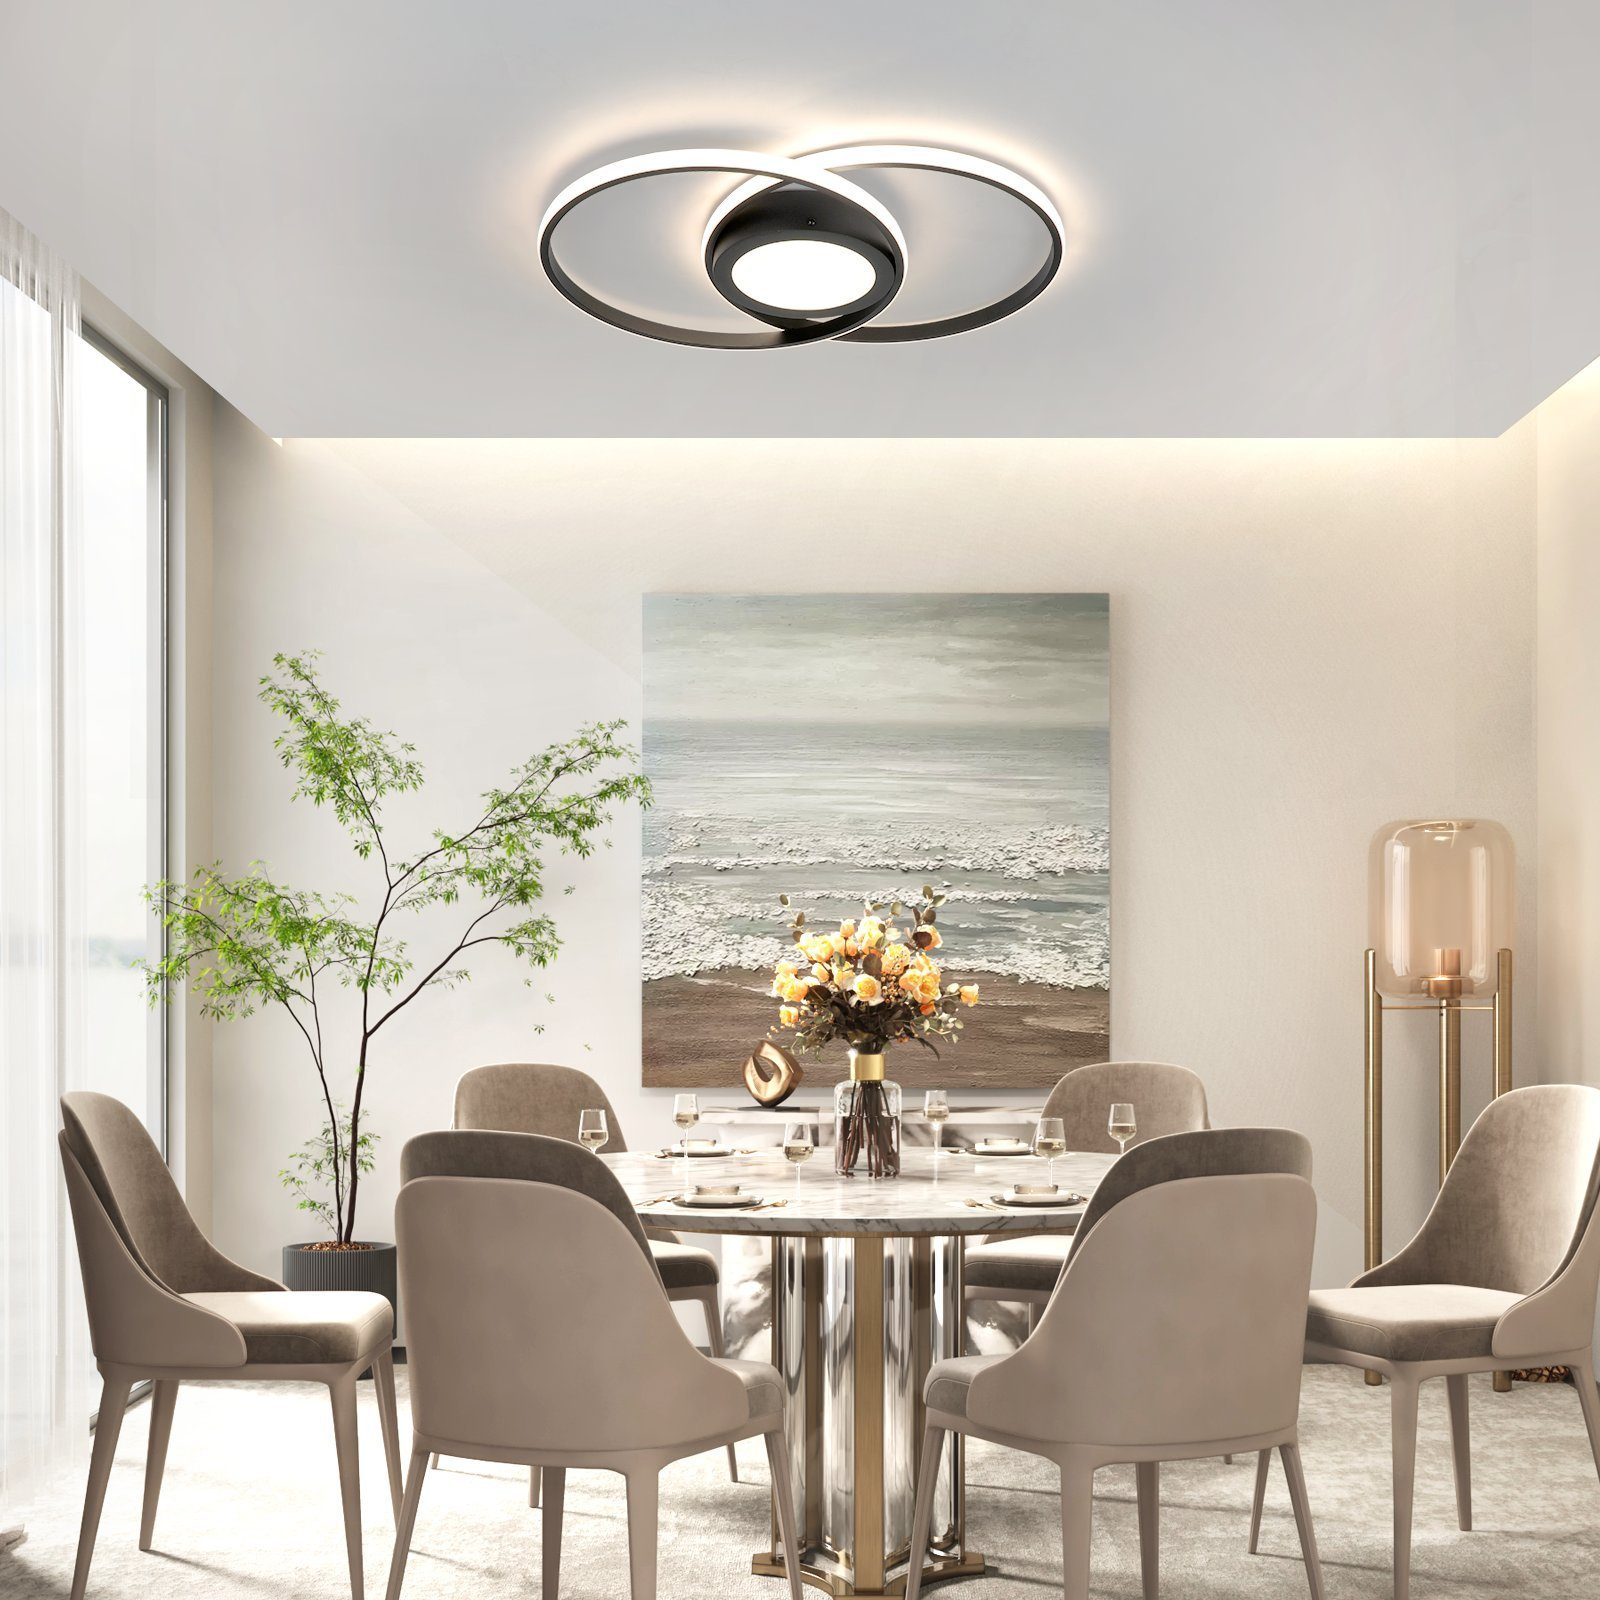 Nettlife LED Deckenleuchte Wohnzimmer Schwarz/Weiß Metall mit Dimmbar 48 W Licht/natürliches warmes Licht/kaltes Licht, Fernbedienung